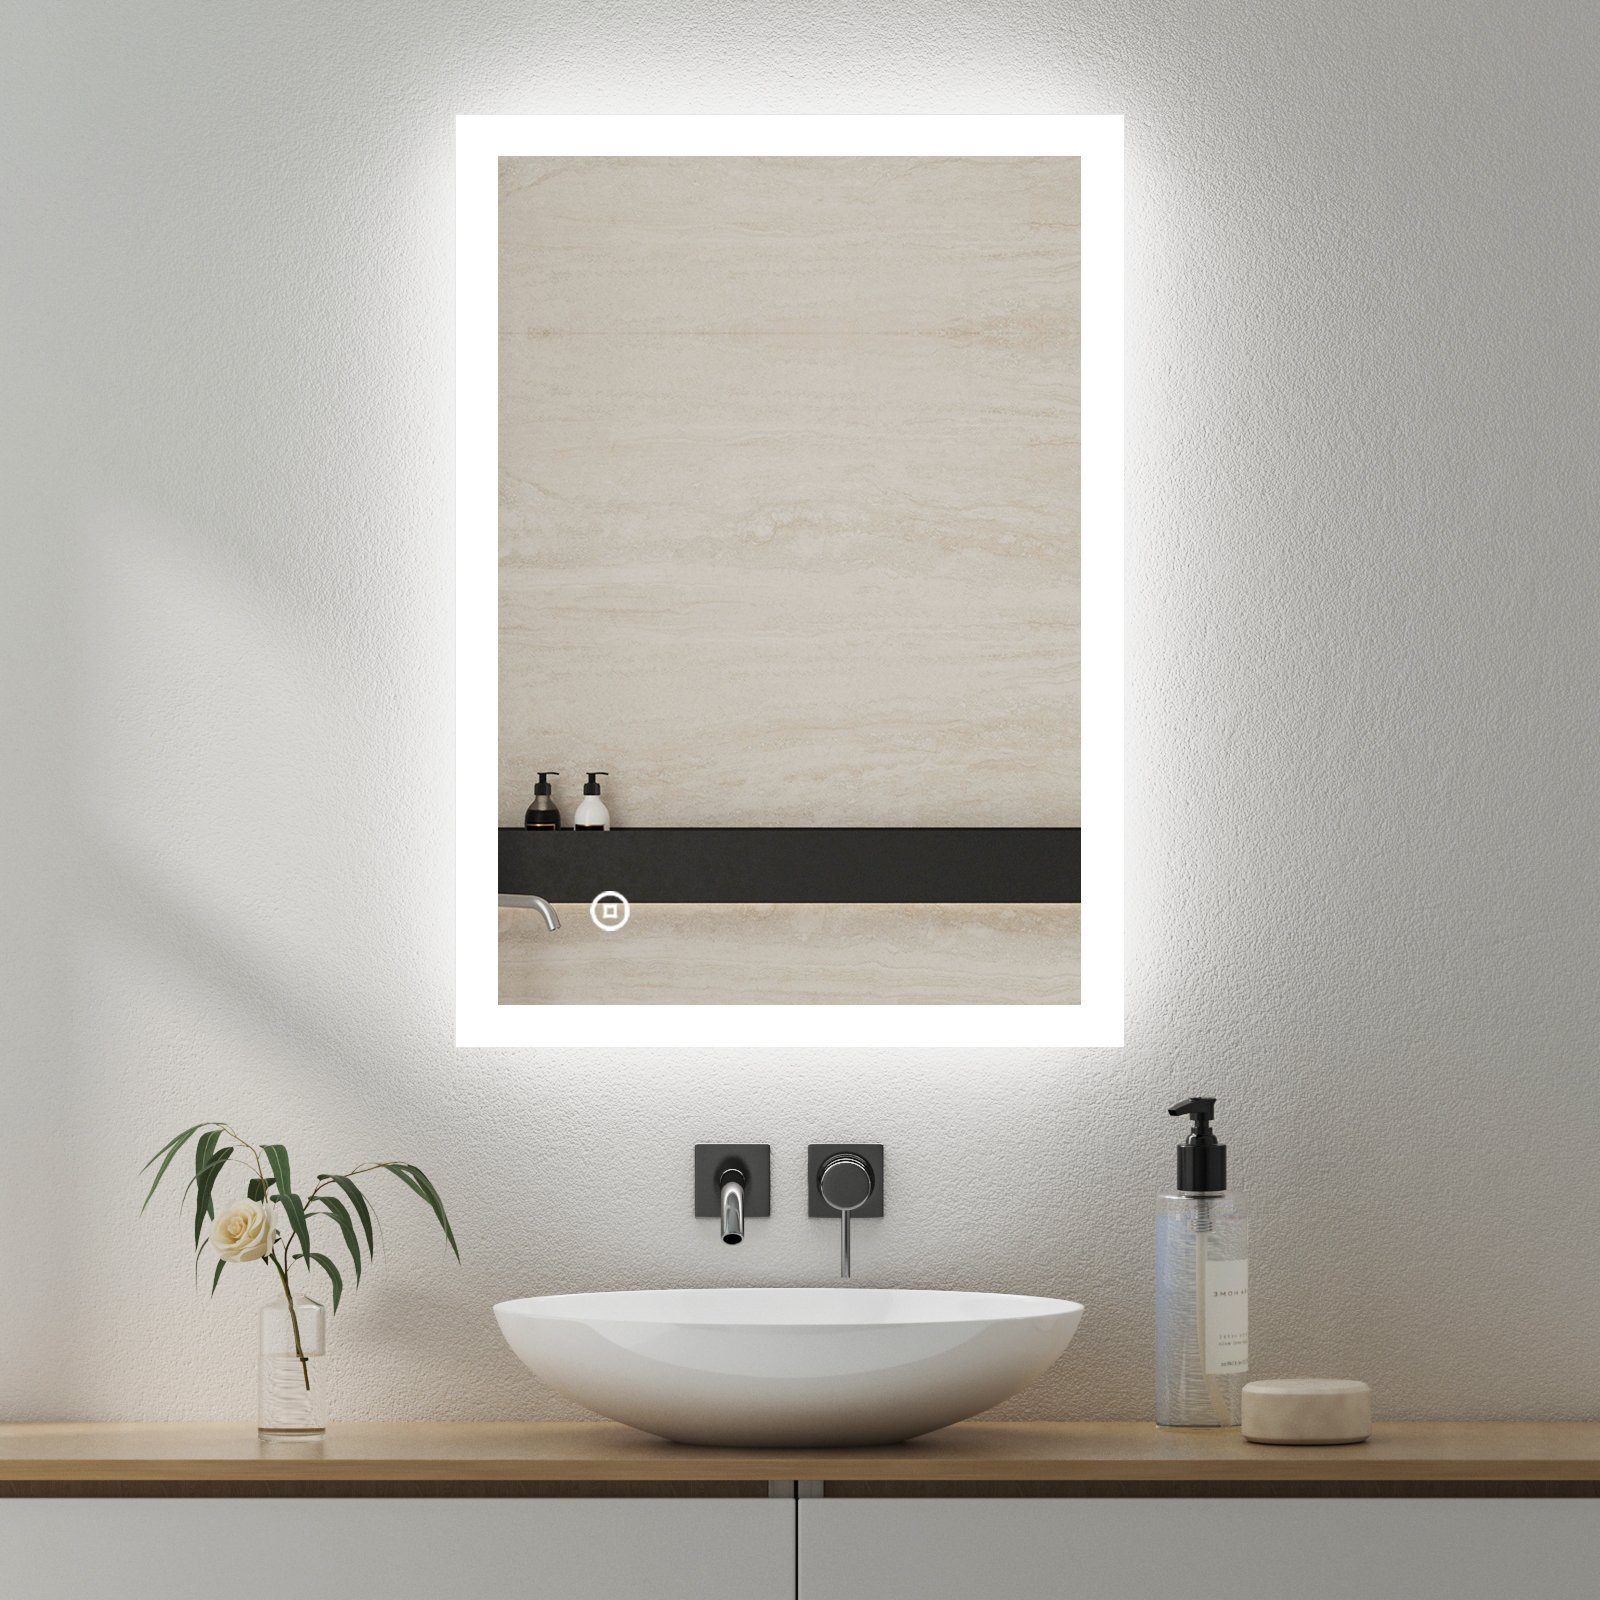 GOEZES Badspiegel Led Badspiegel 50 x 70 cm mit wandschalter Touch  Speicherfunktion (Wandspiegel, Badezimmerspiegel mit Beleuchtung,  Lichtspiegel, Spiegel Bad Led, 3-Lichtfarben, Helligkeit einstellbar),  energiesparender,IP44